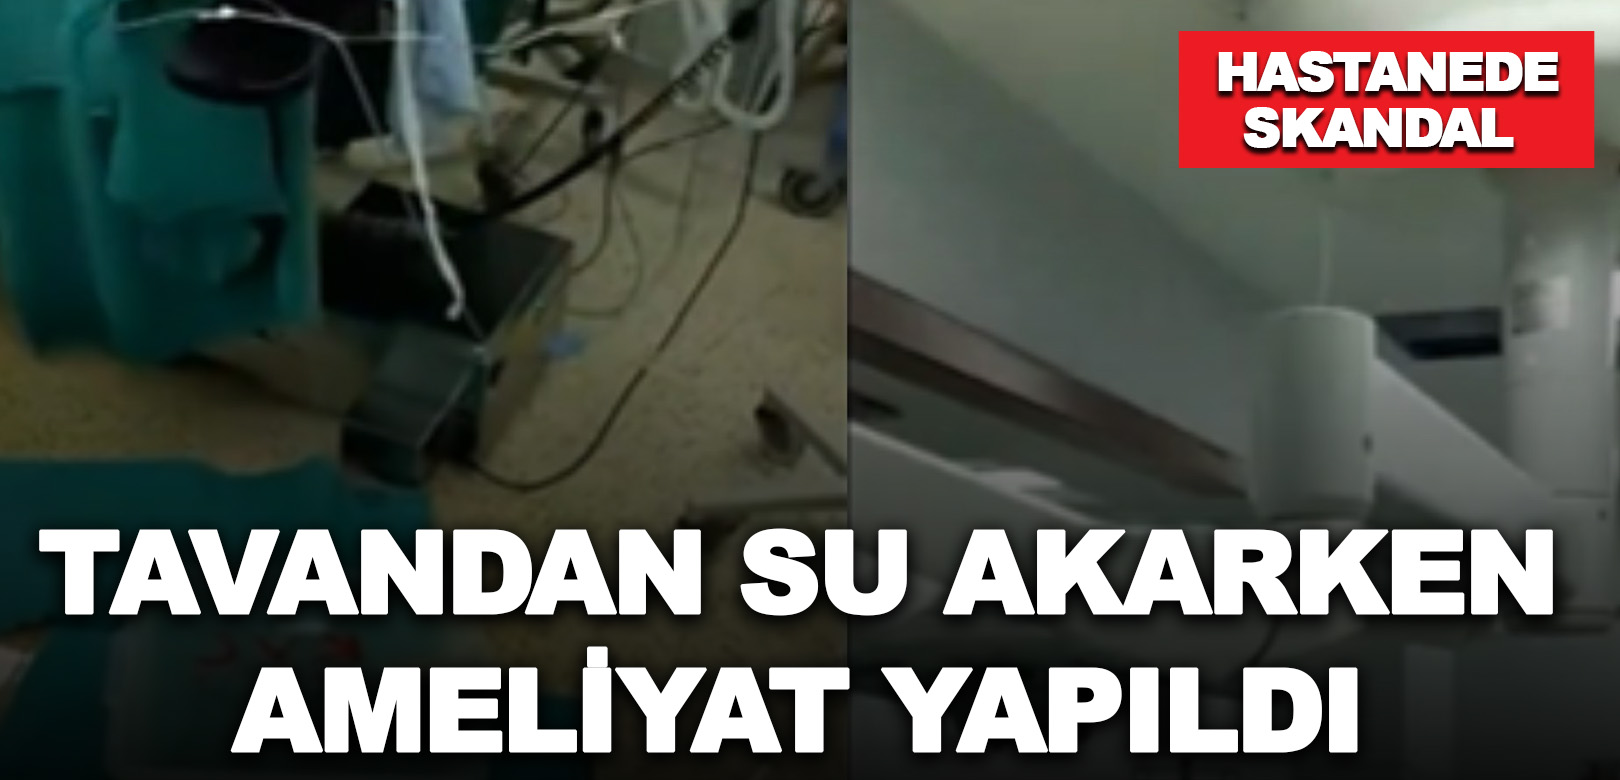 Devlet hastanesinde skandal: Tavandan su akarken ameliyat yapıldı